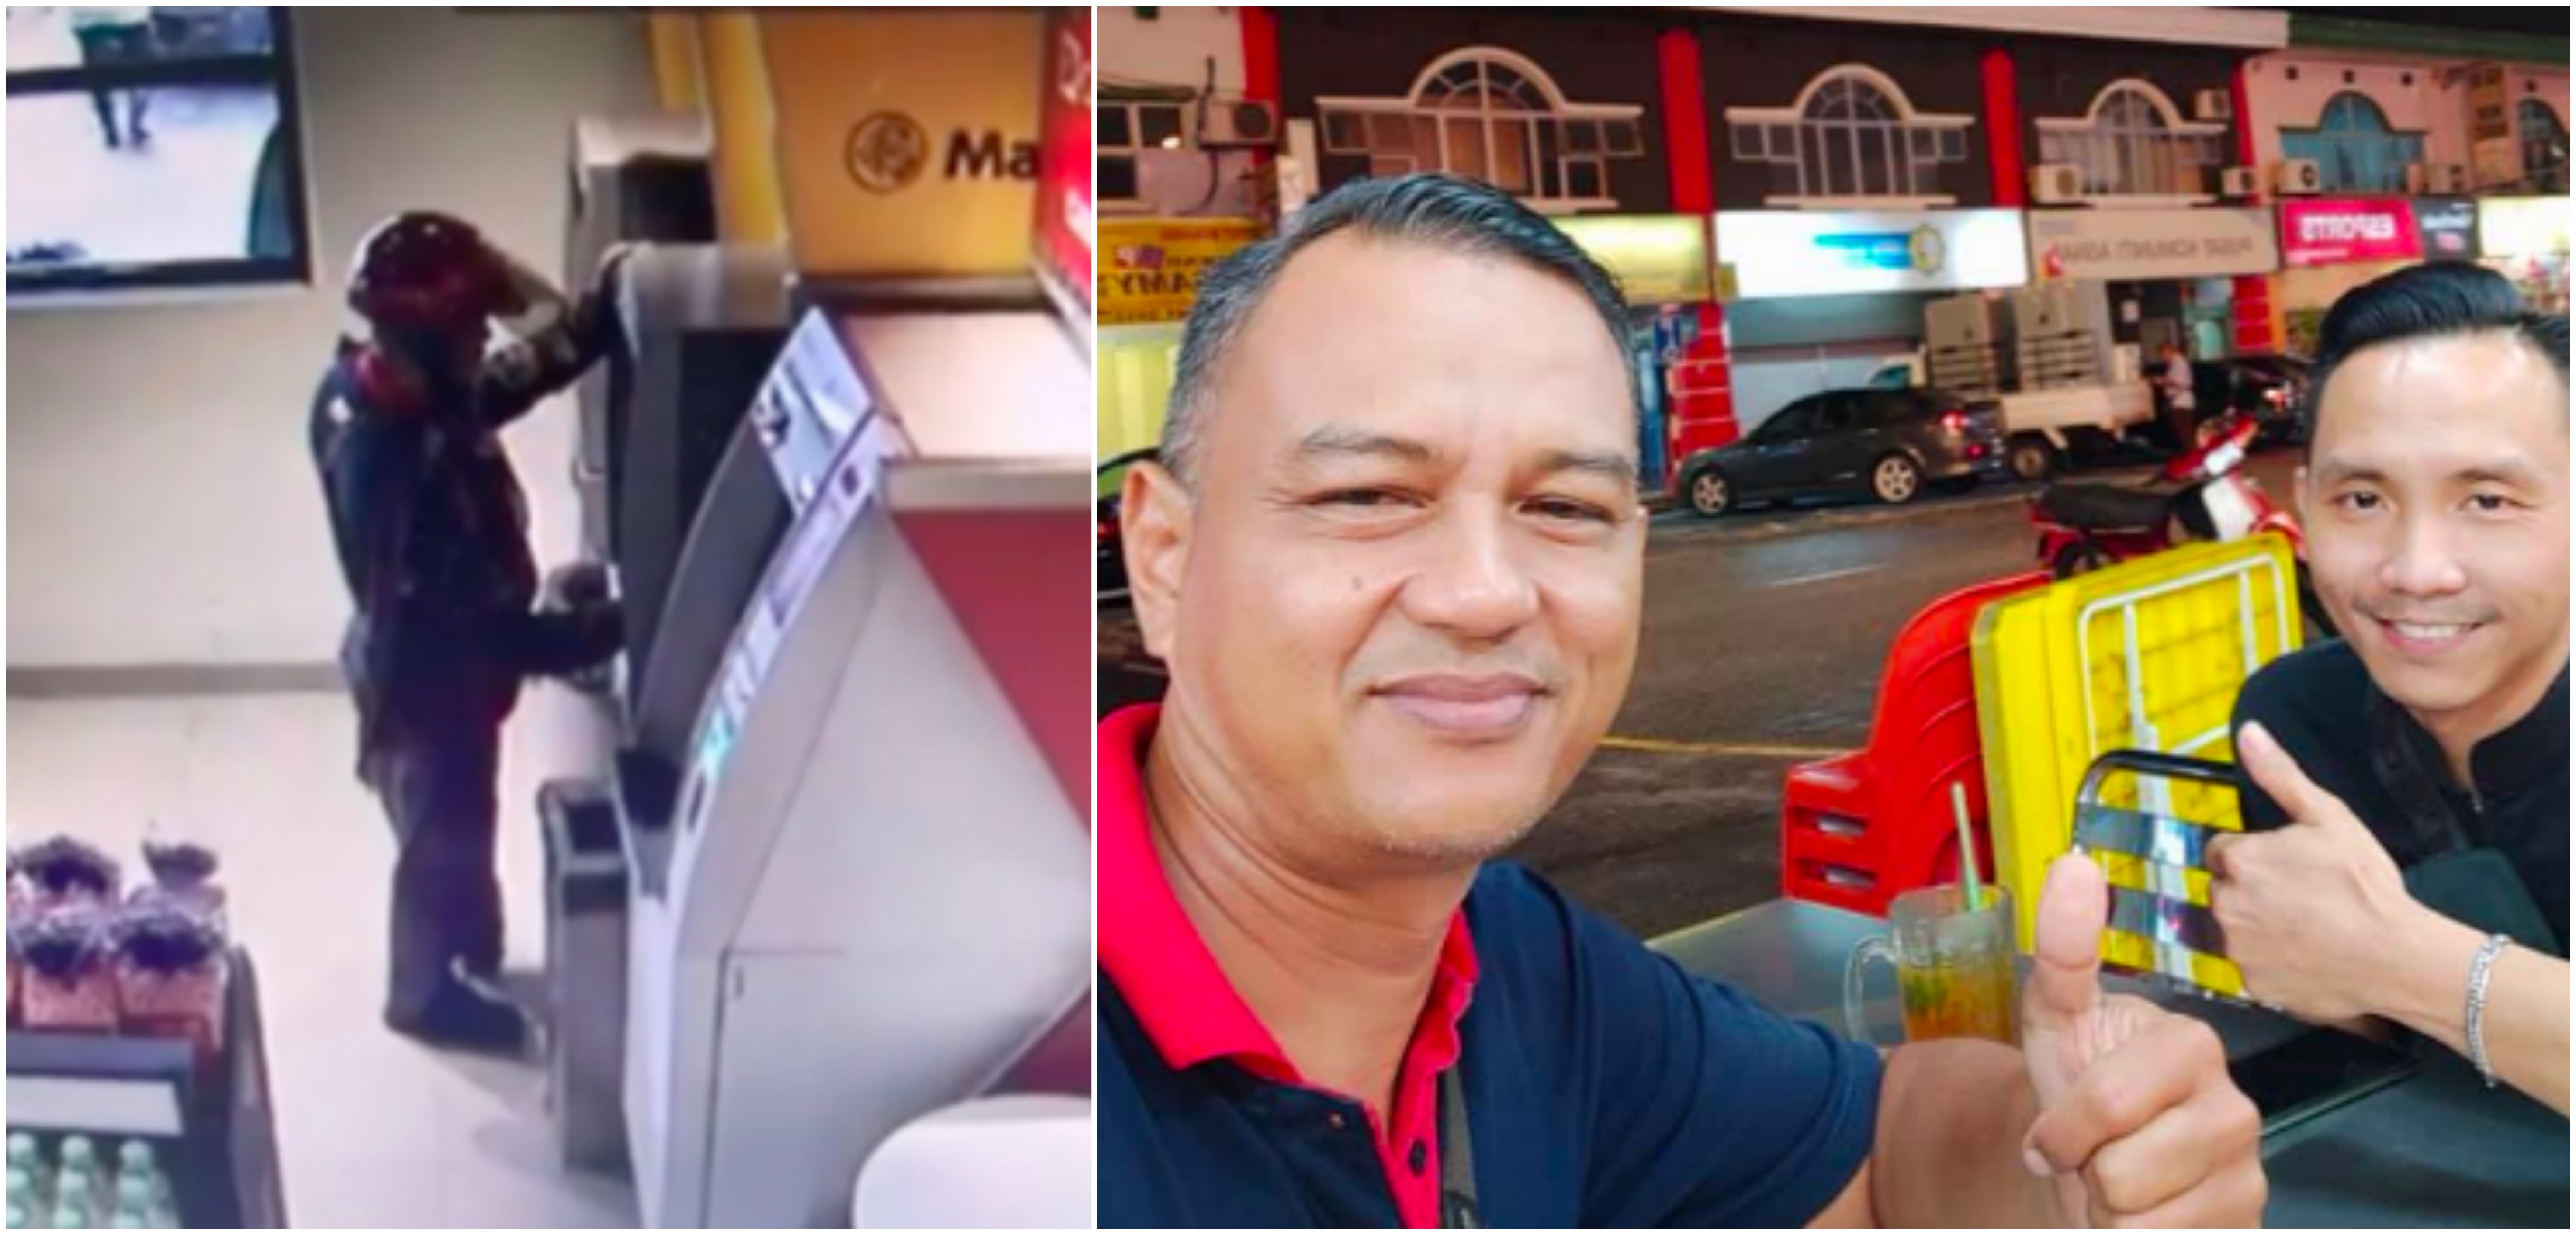 Wang ‘Lesap’ Terlupa Ambil Di ATM, Lelaki Syukur Hak Dikembalikan Selepas Viral